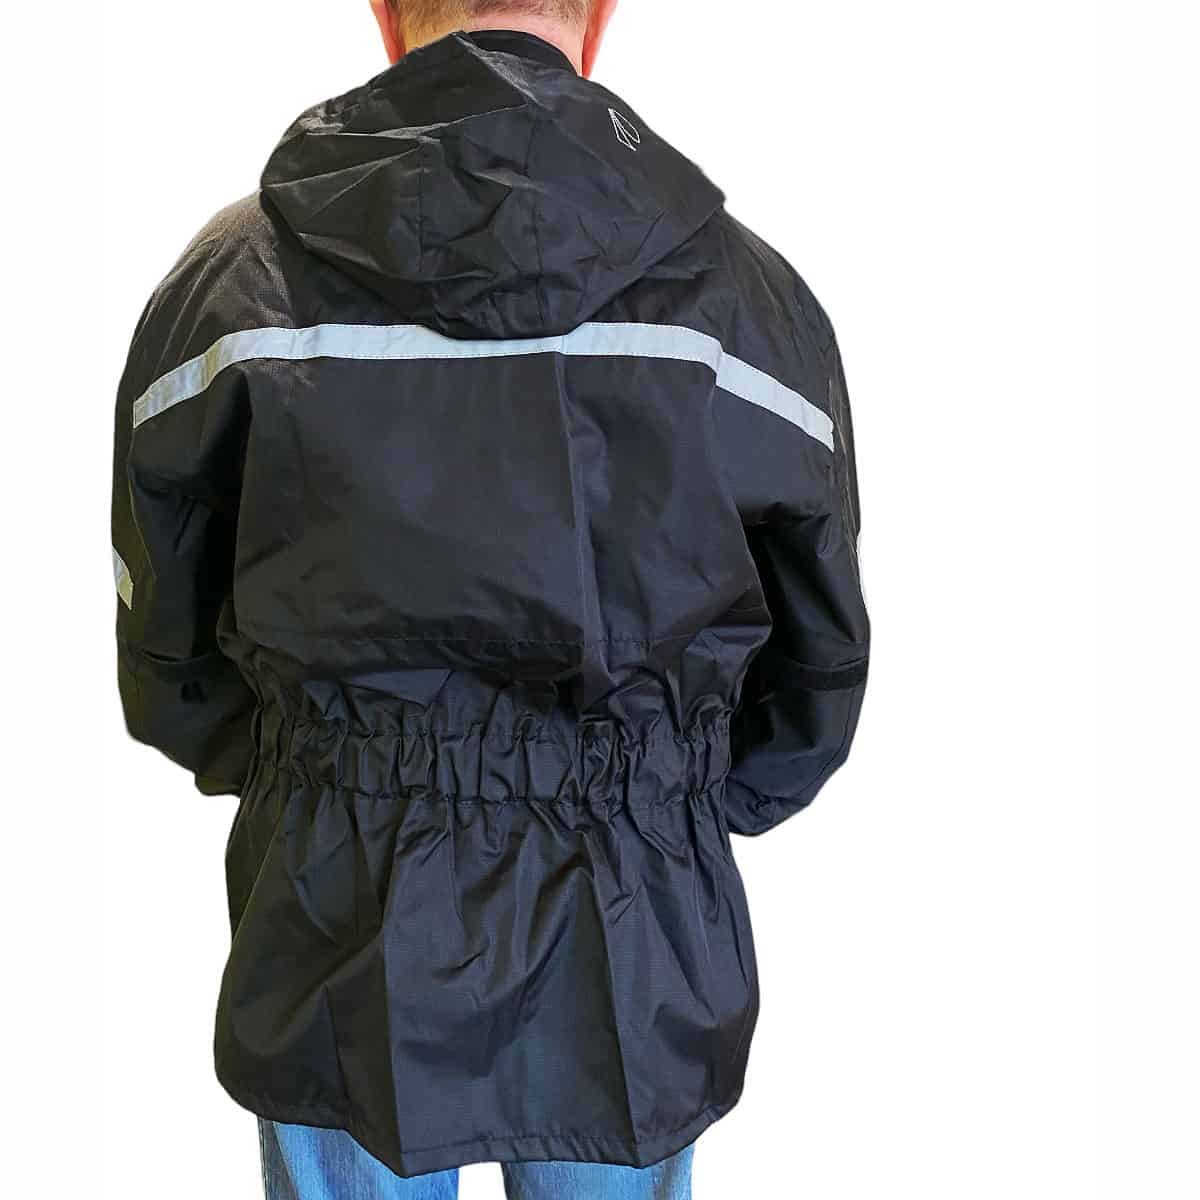 Spada Aqua waterproof Rain Over-jacket